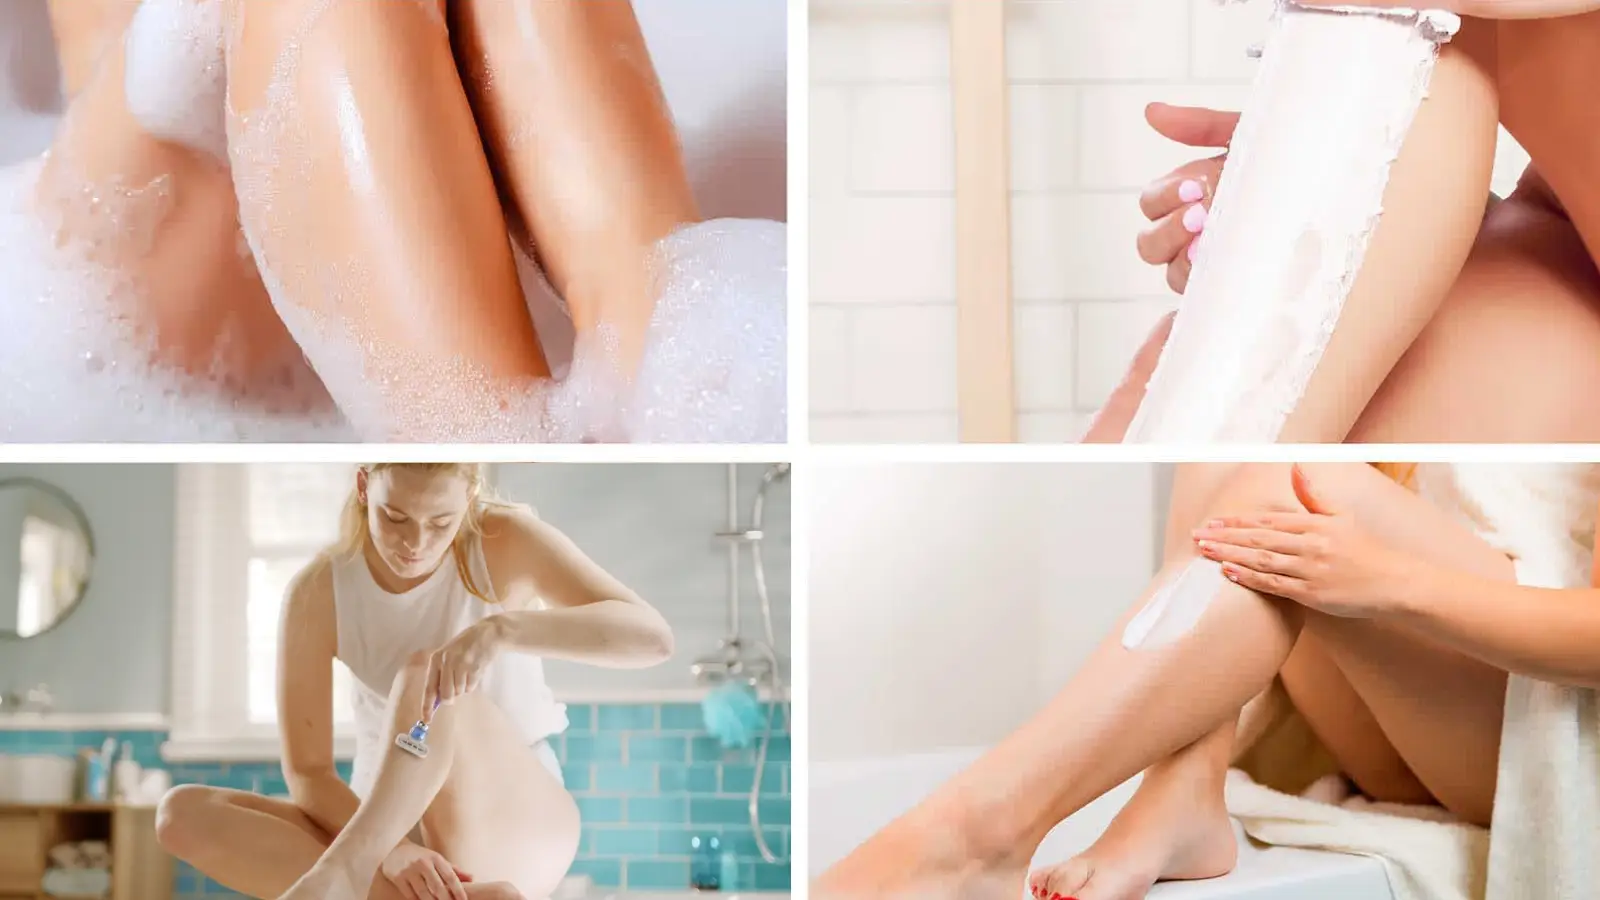 Jambes de femme dans un bain moussant, femme essuyant la crème dépilatoire sur sa jambe, femme se rasant avec un rasoir dans une salle de bain, femme appliquant de la crème sur sa jambe